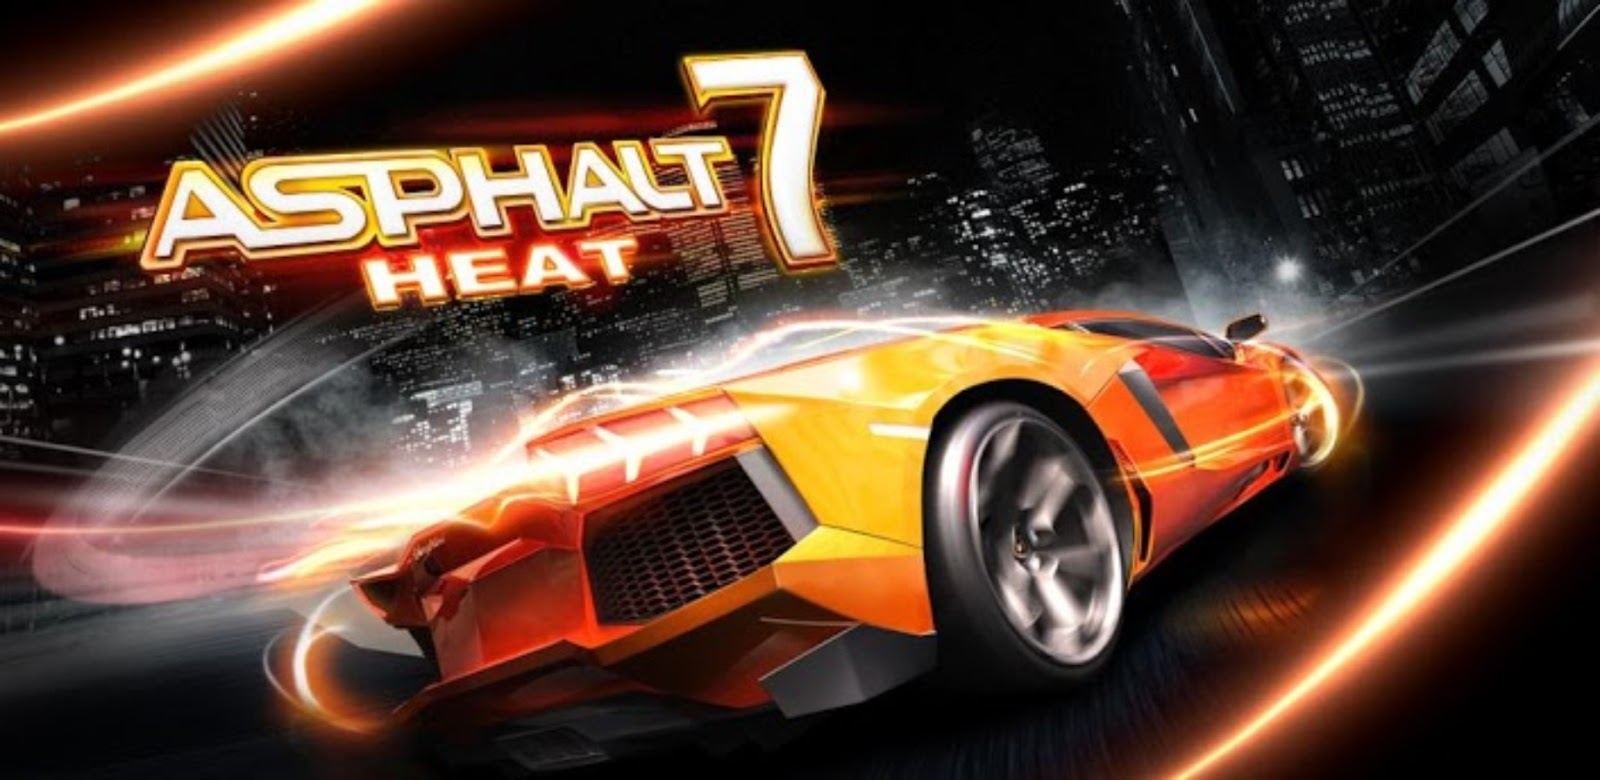 Asphalt 7: Heat v1.0.4 APK + SD DATA | Android Games Download